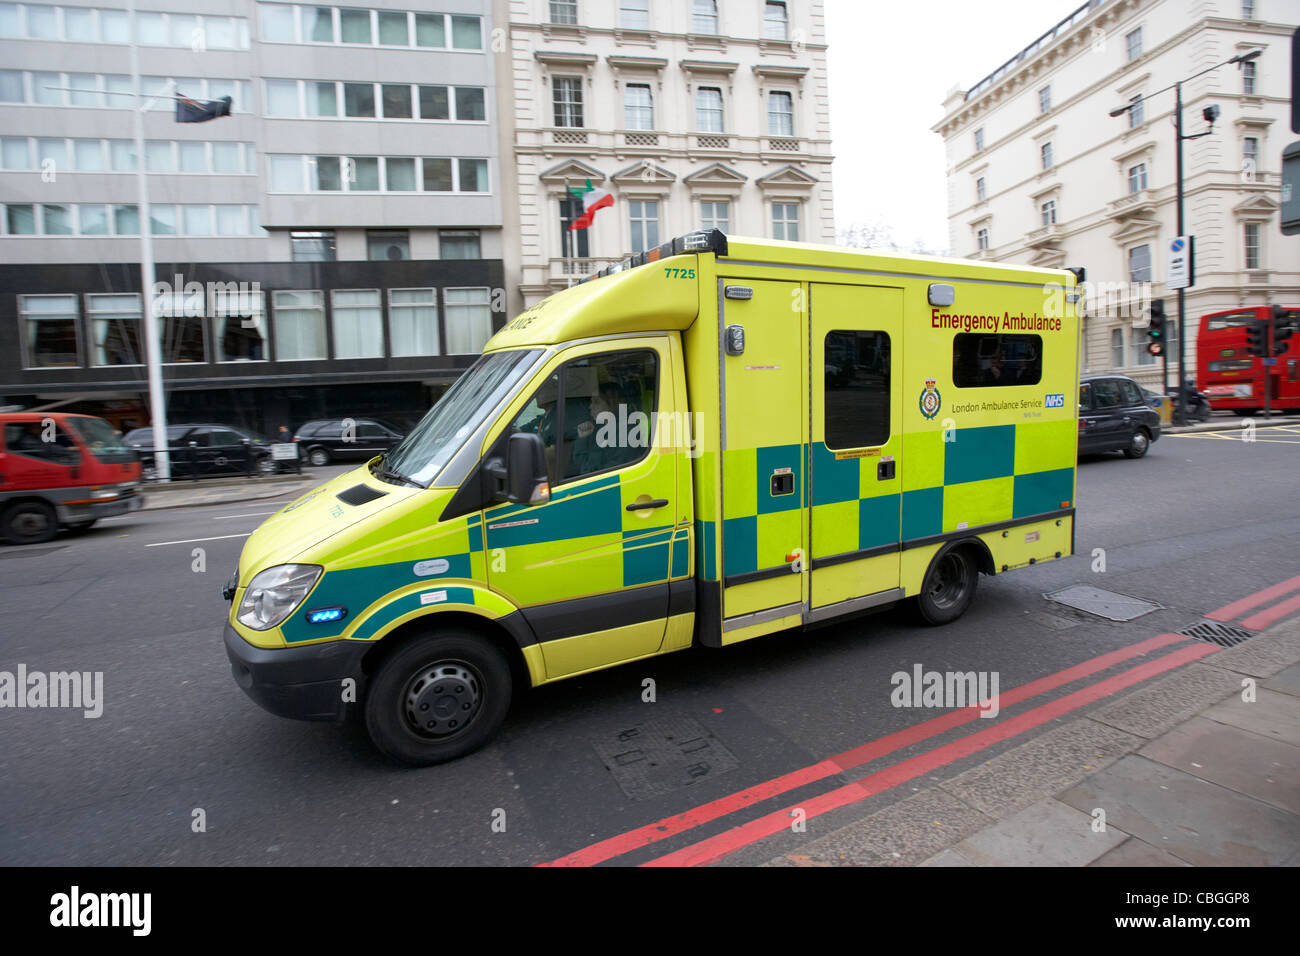 london ambulance service vehicle speeding through streets of london england uk united kingdom Stock Photo